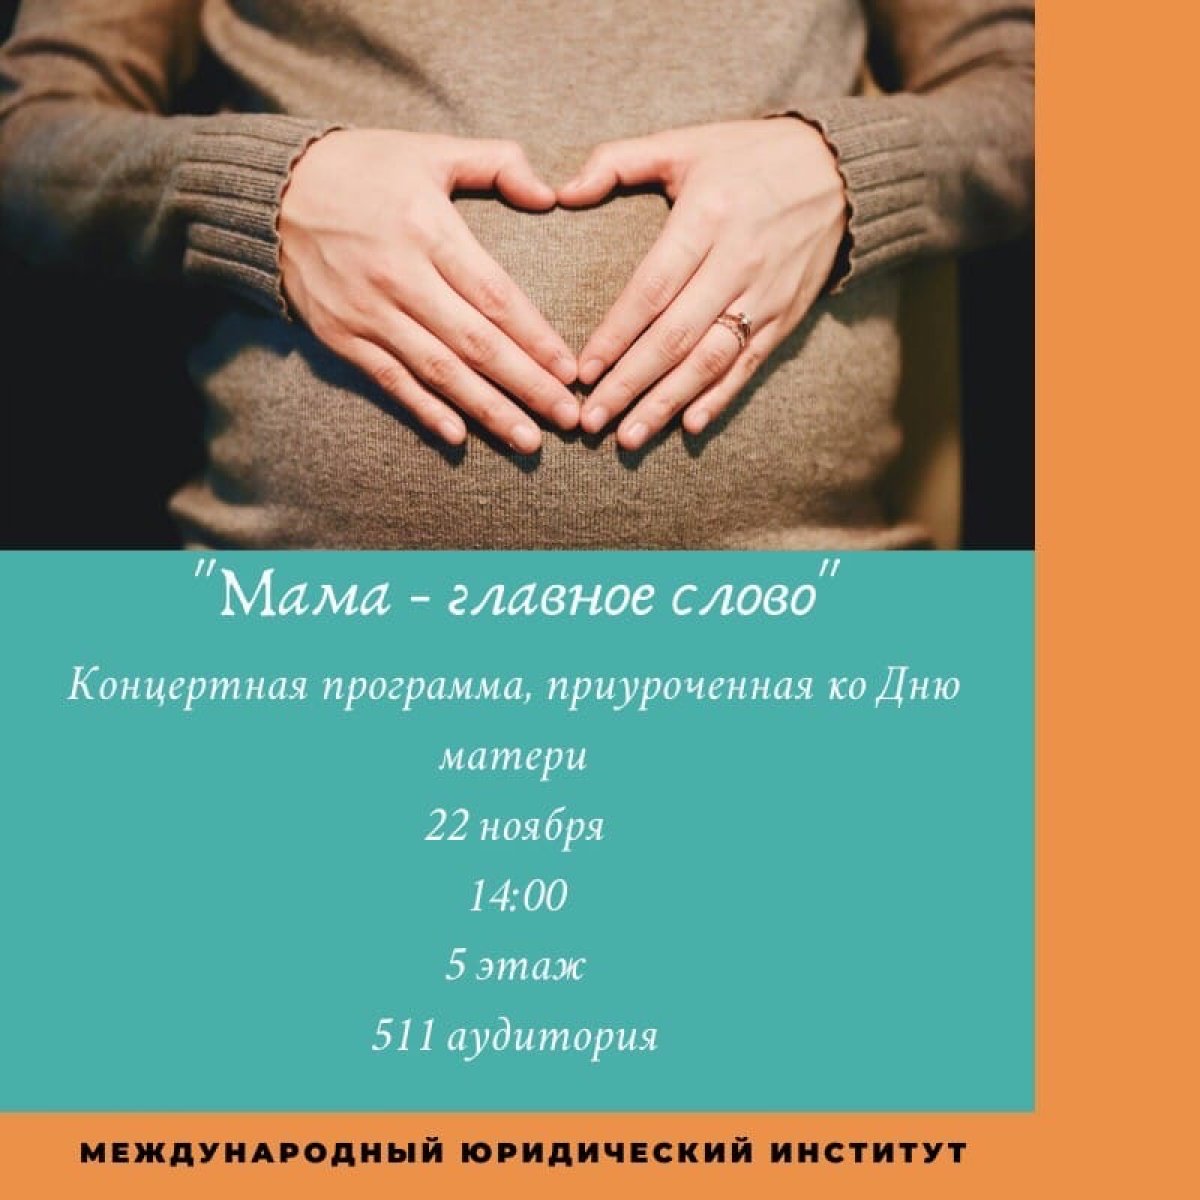 В России День матери отмечают в последнее воскресенье ноября.